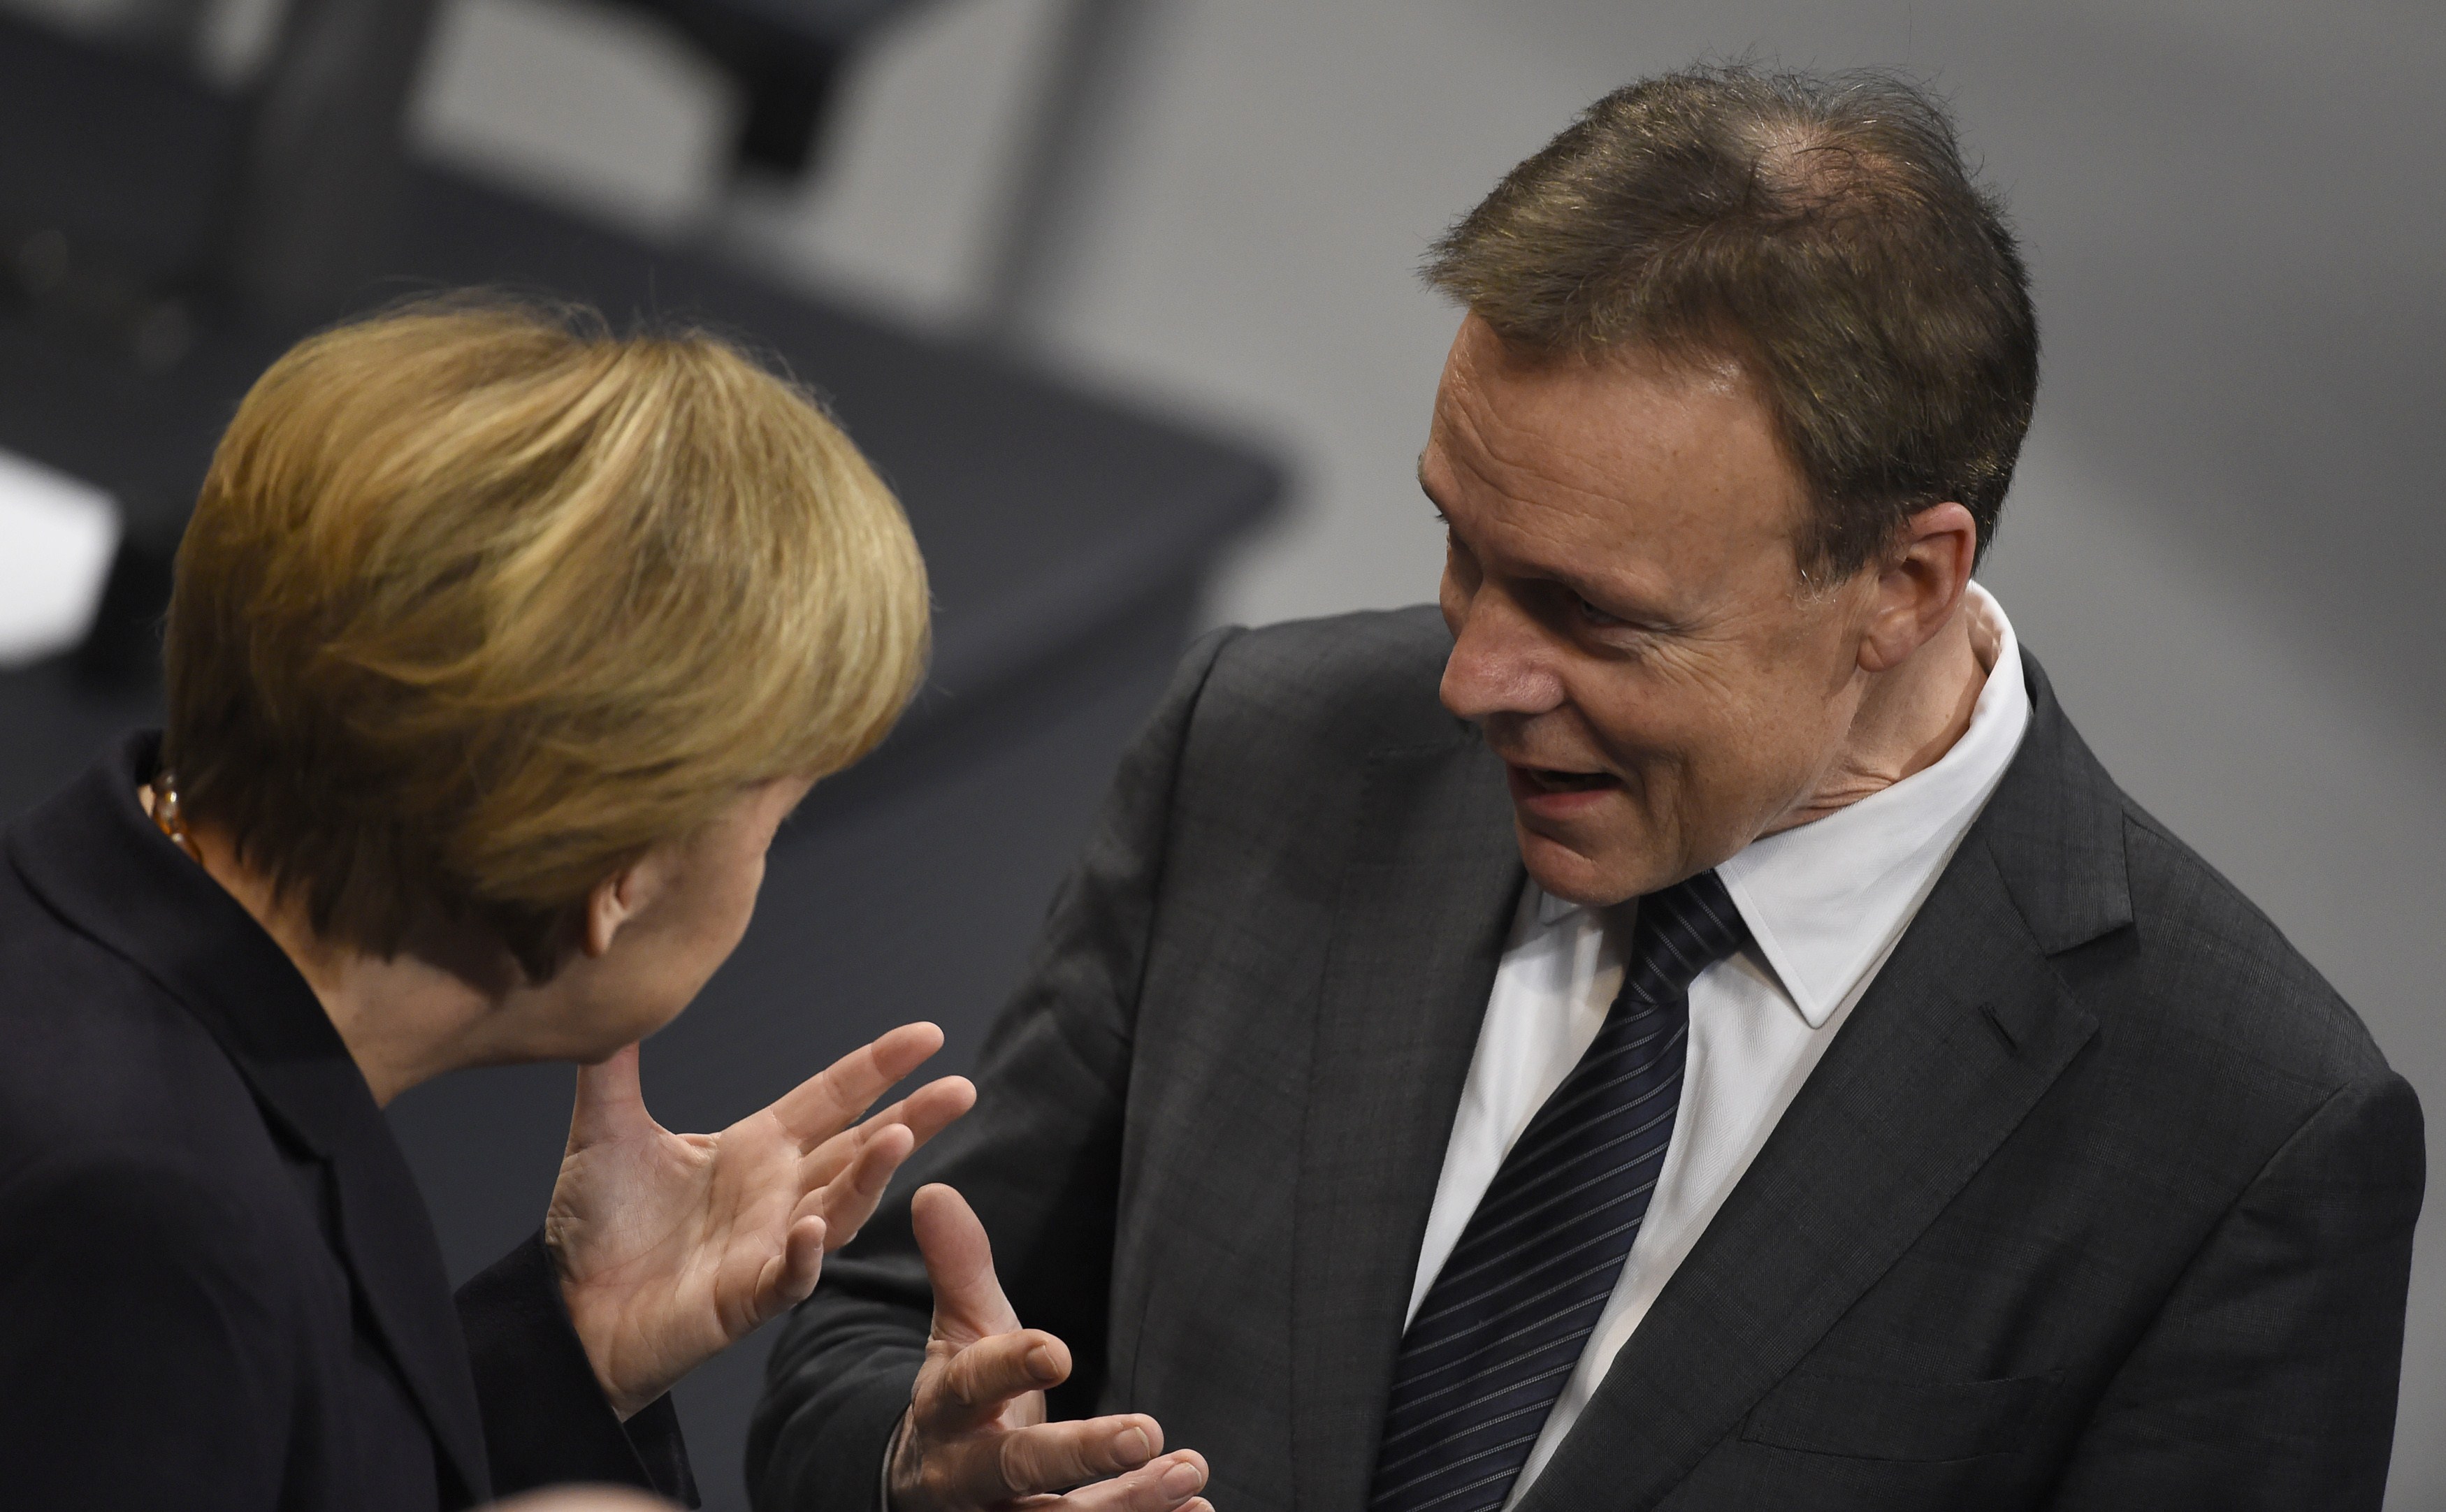 Oppermann: „Merkel trägt am Erstarken der AfD Mitschuld“